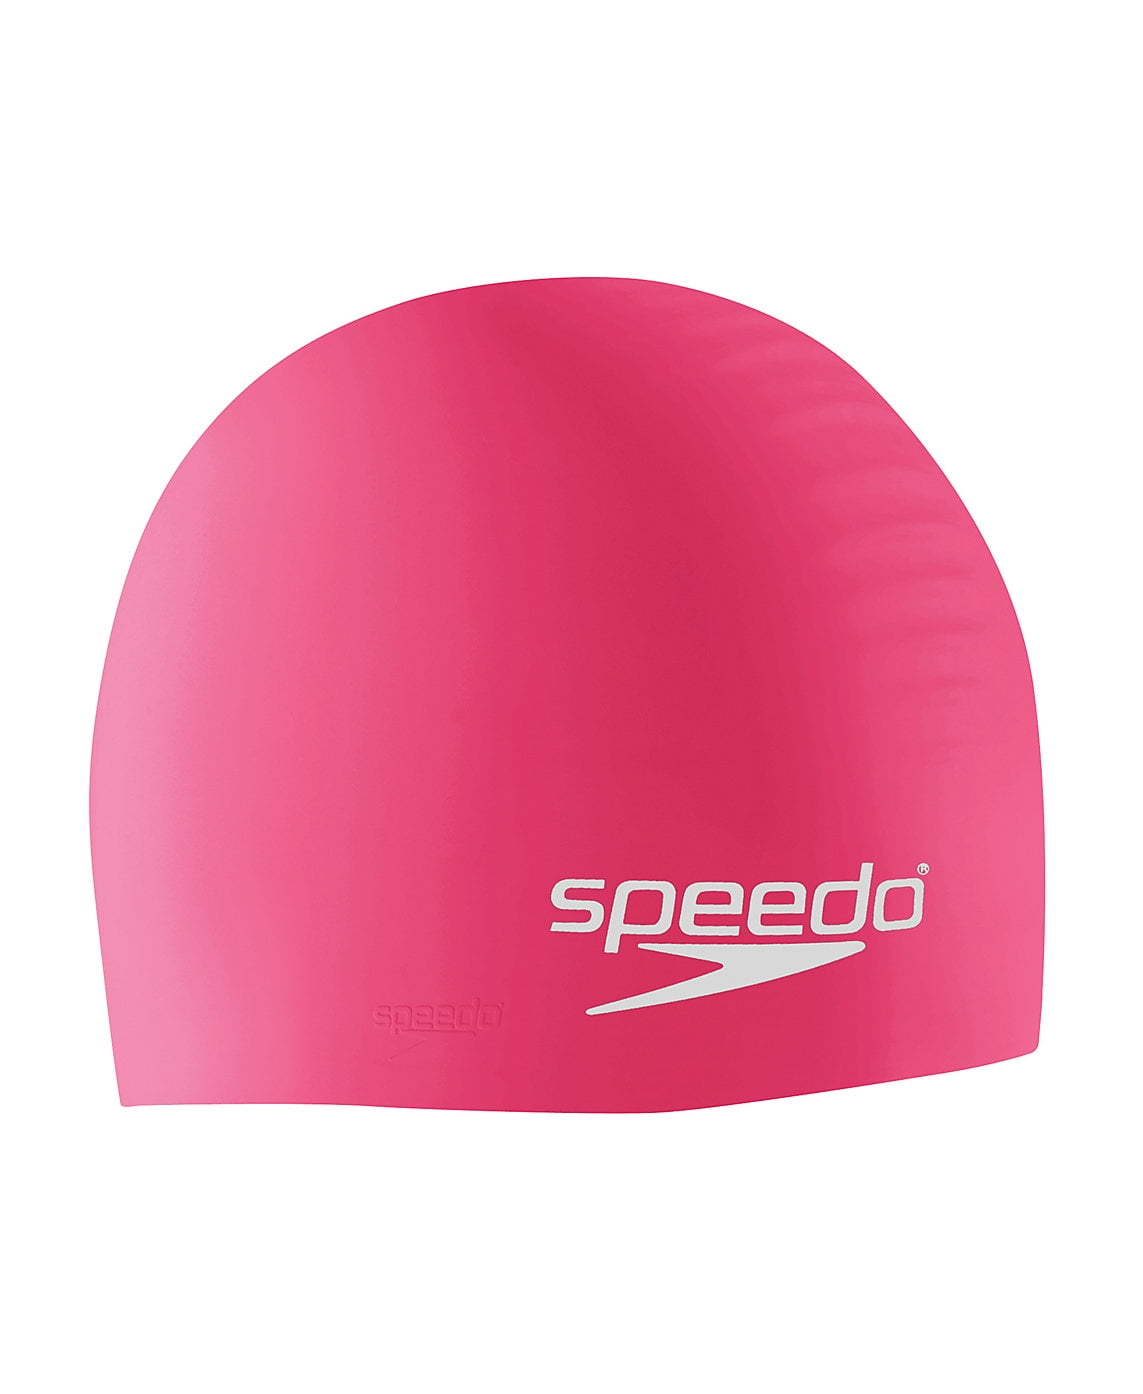 Speedo Multi Coloured Silicone Swim Cap Pink 